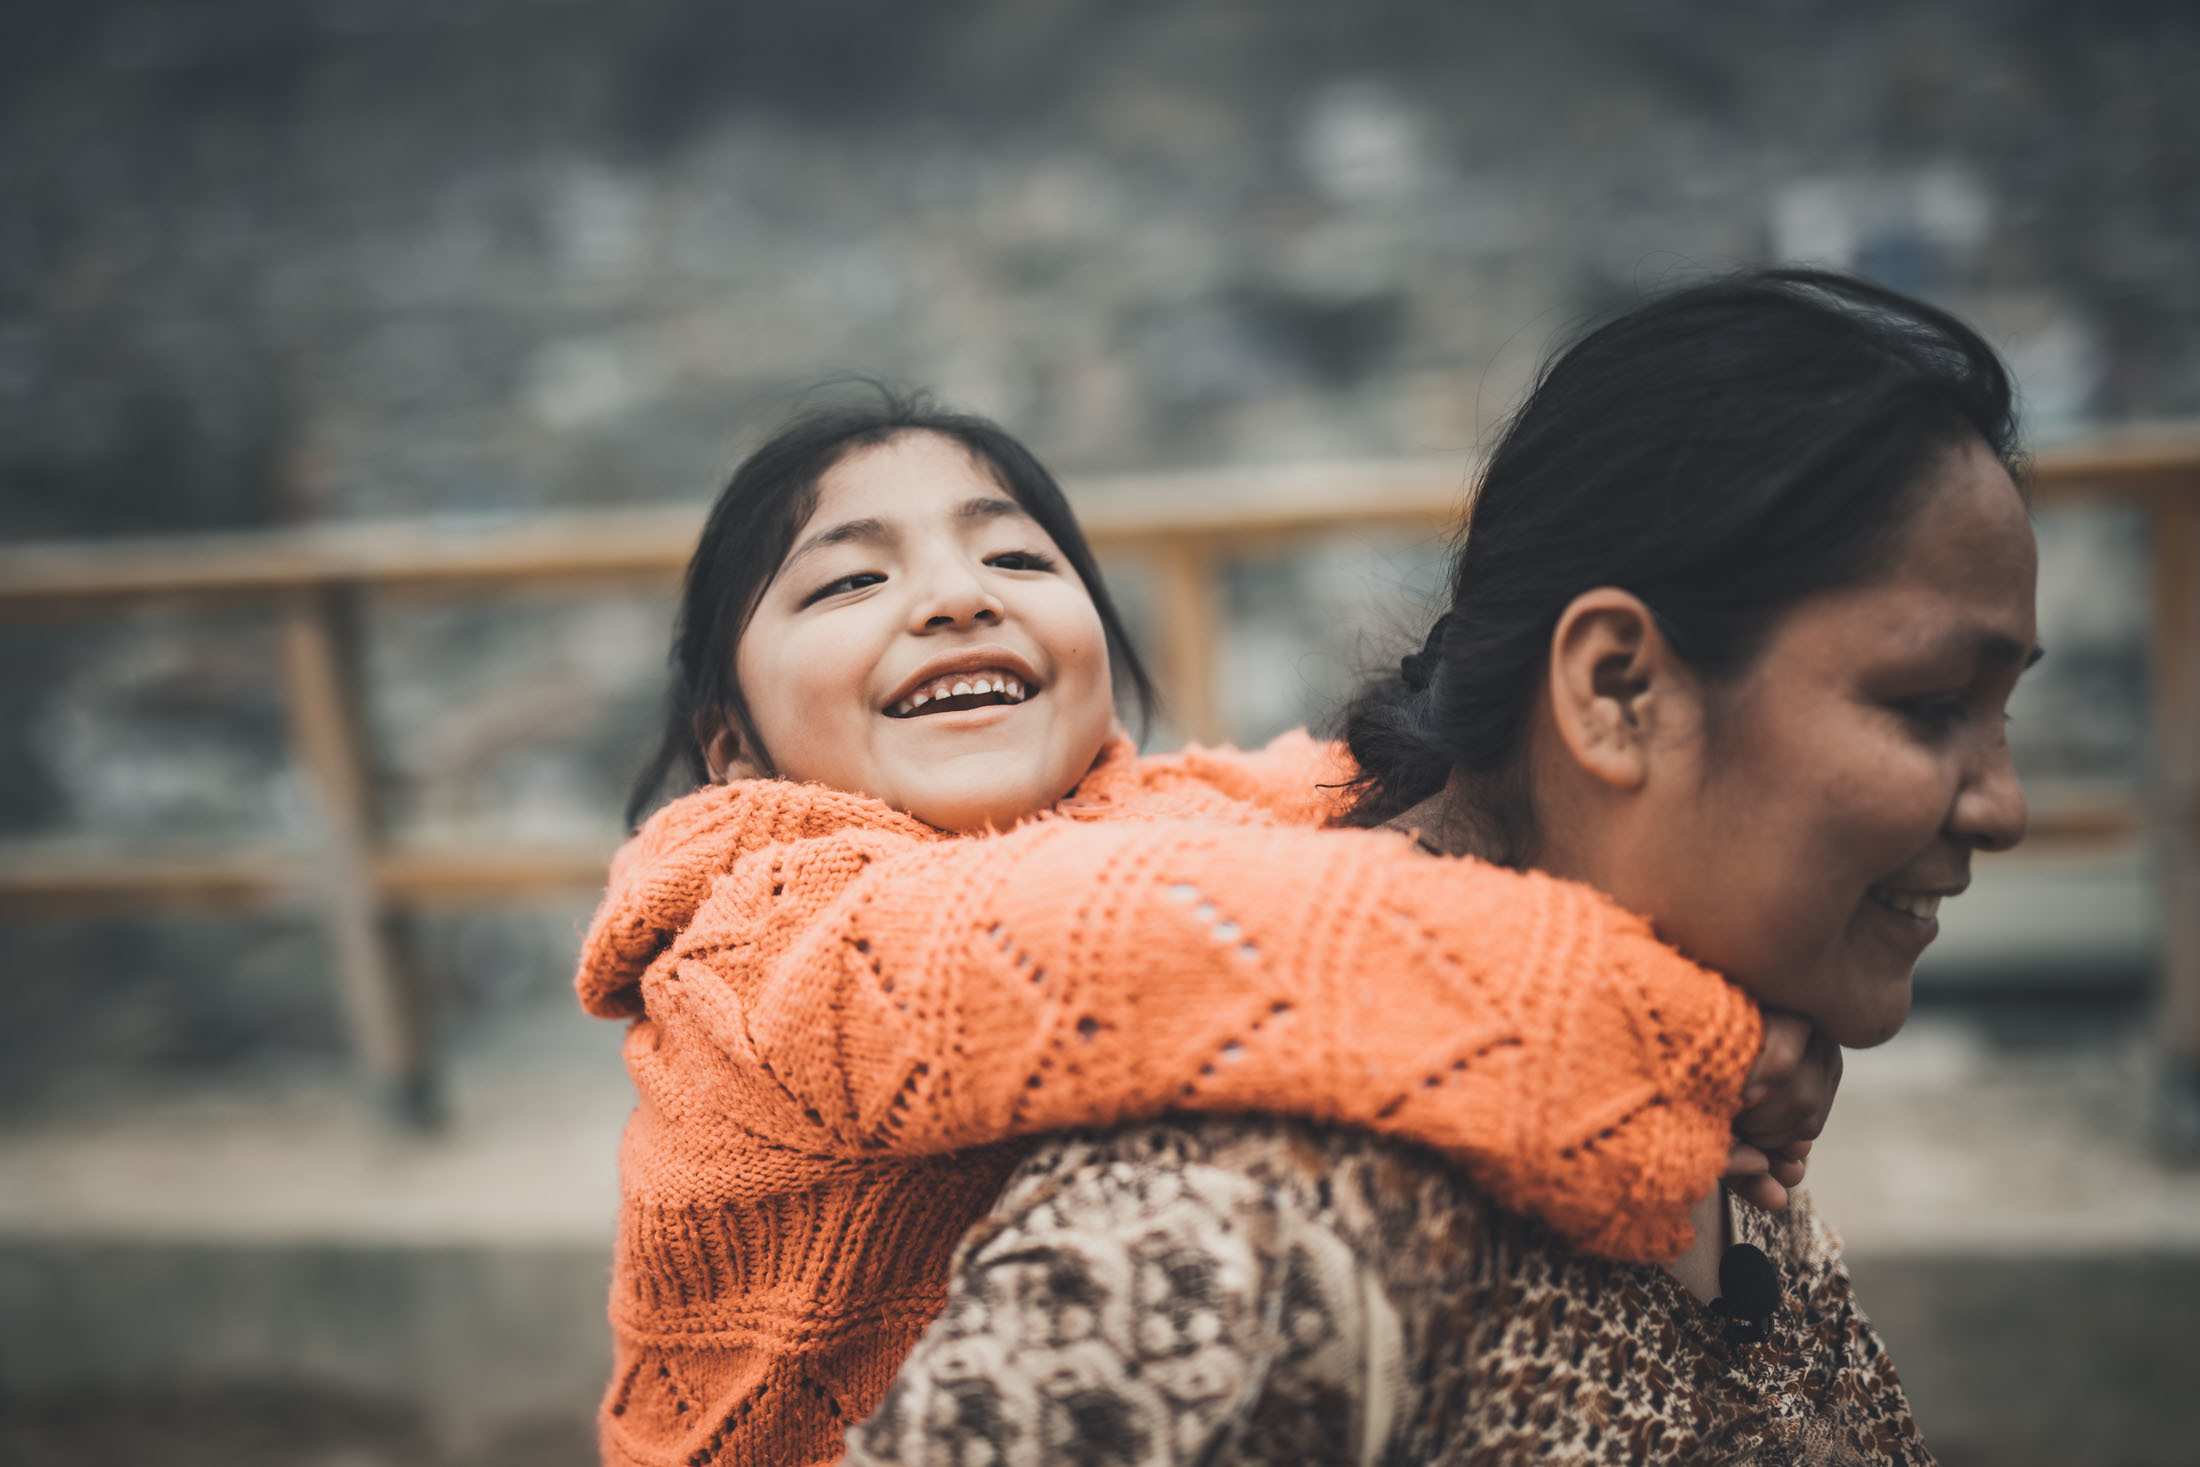 Eine Mutter aus Peru trägt ihre lachende Tochter auf dem Rücken. (Quelle: Jakob Studnar)